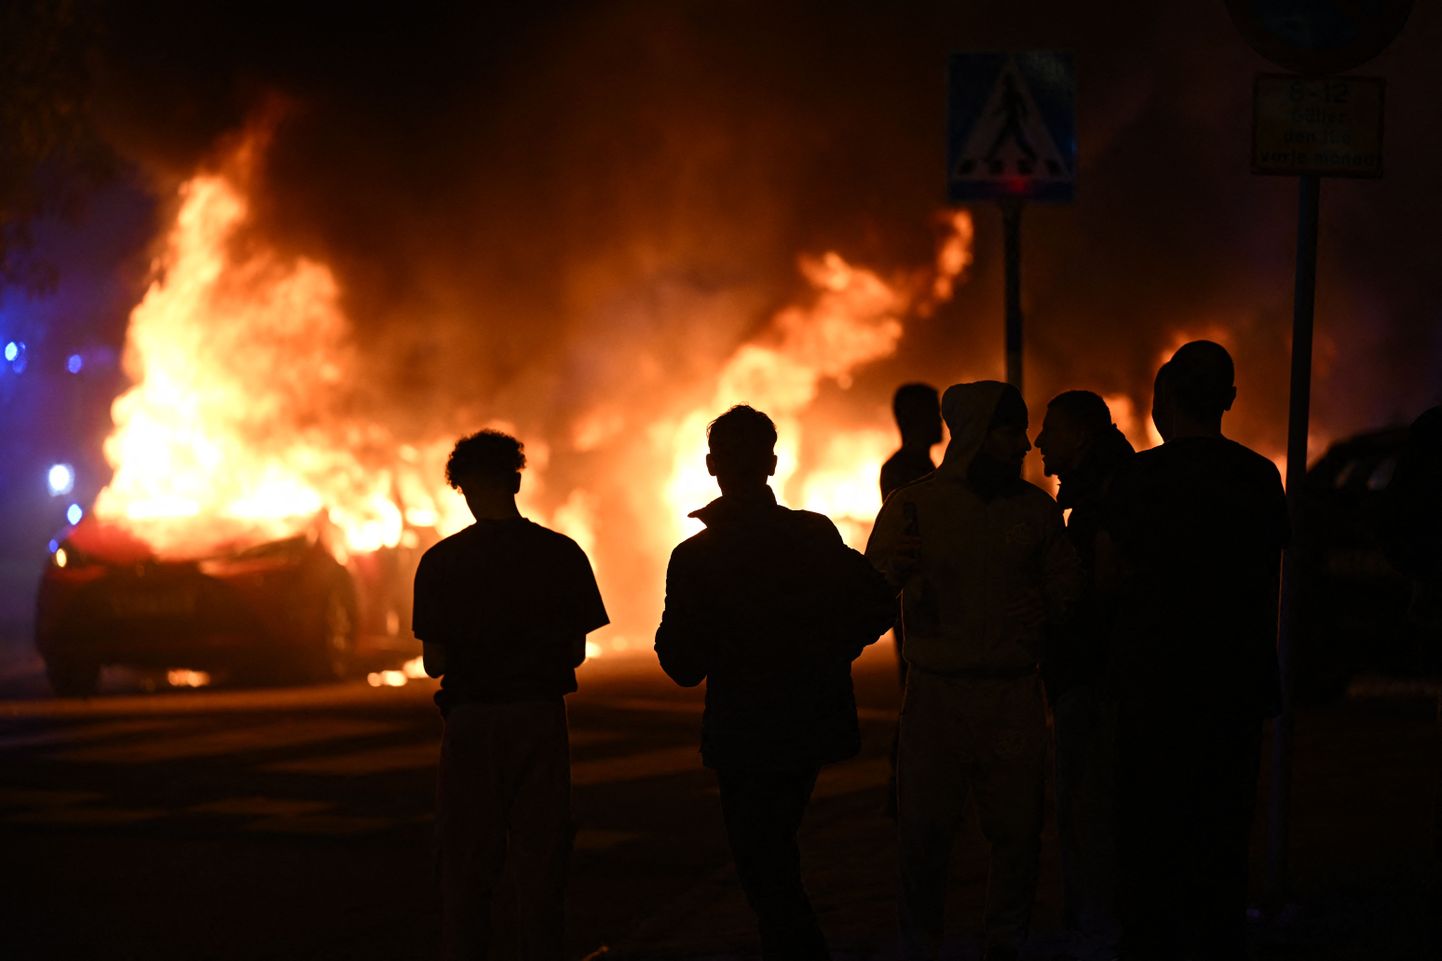 Inimesed vaatavad põlevaid autosid Malmös Rosengårdi linnaosas eelmise aasta septembris, kui piirkonnas vallandusid pärast koraani põletamist rahutused.